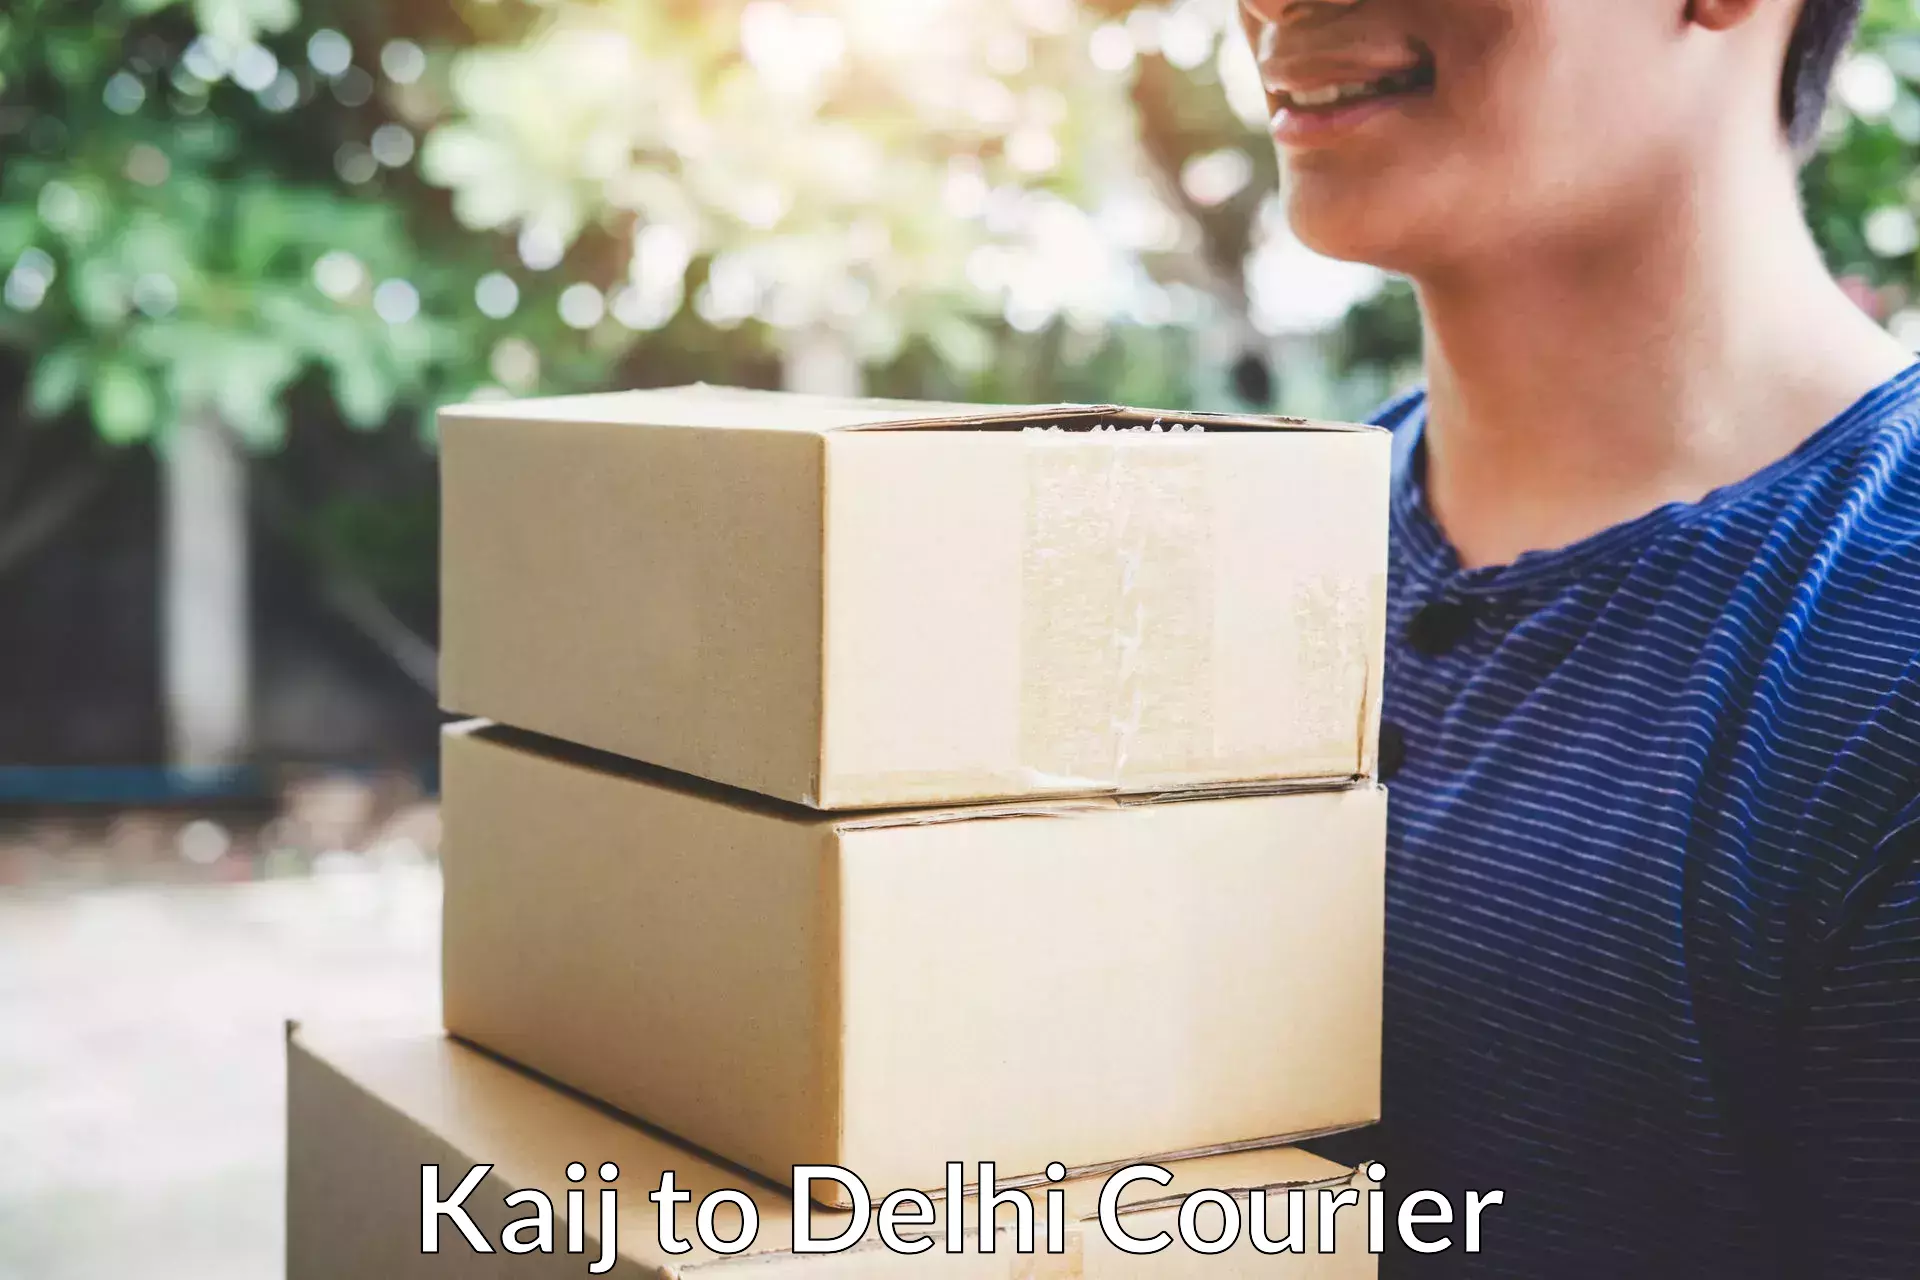 Quality moving company Kaij to University of Delhi